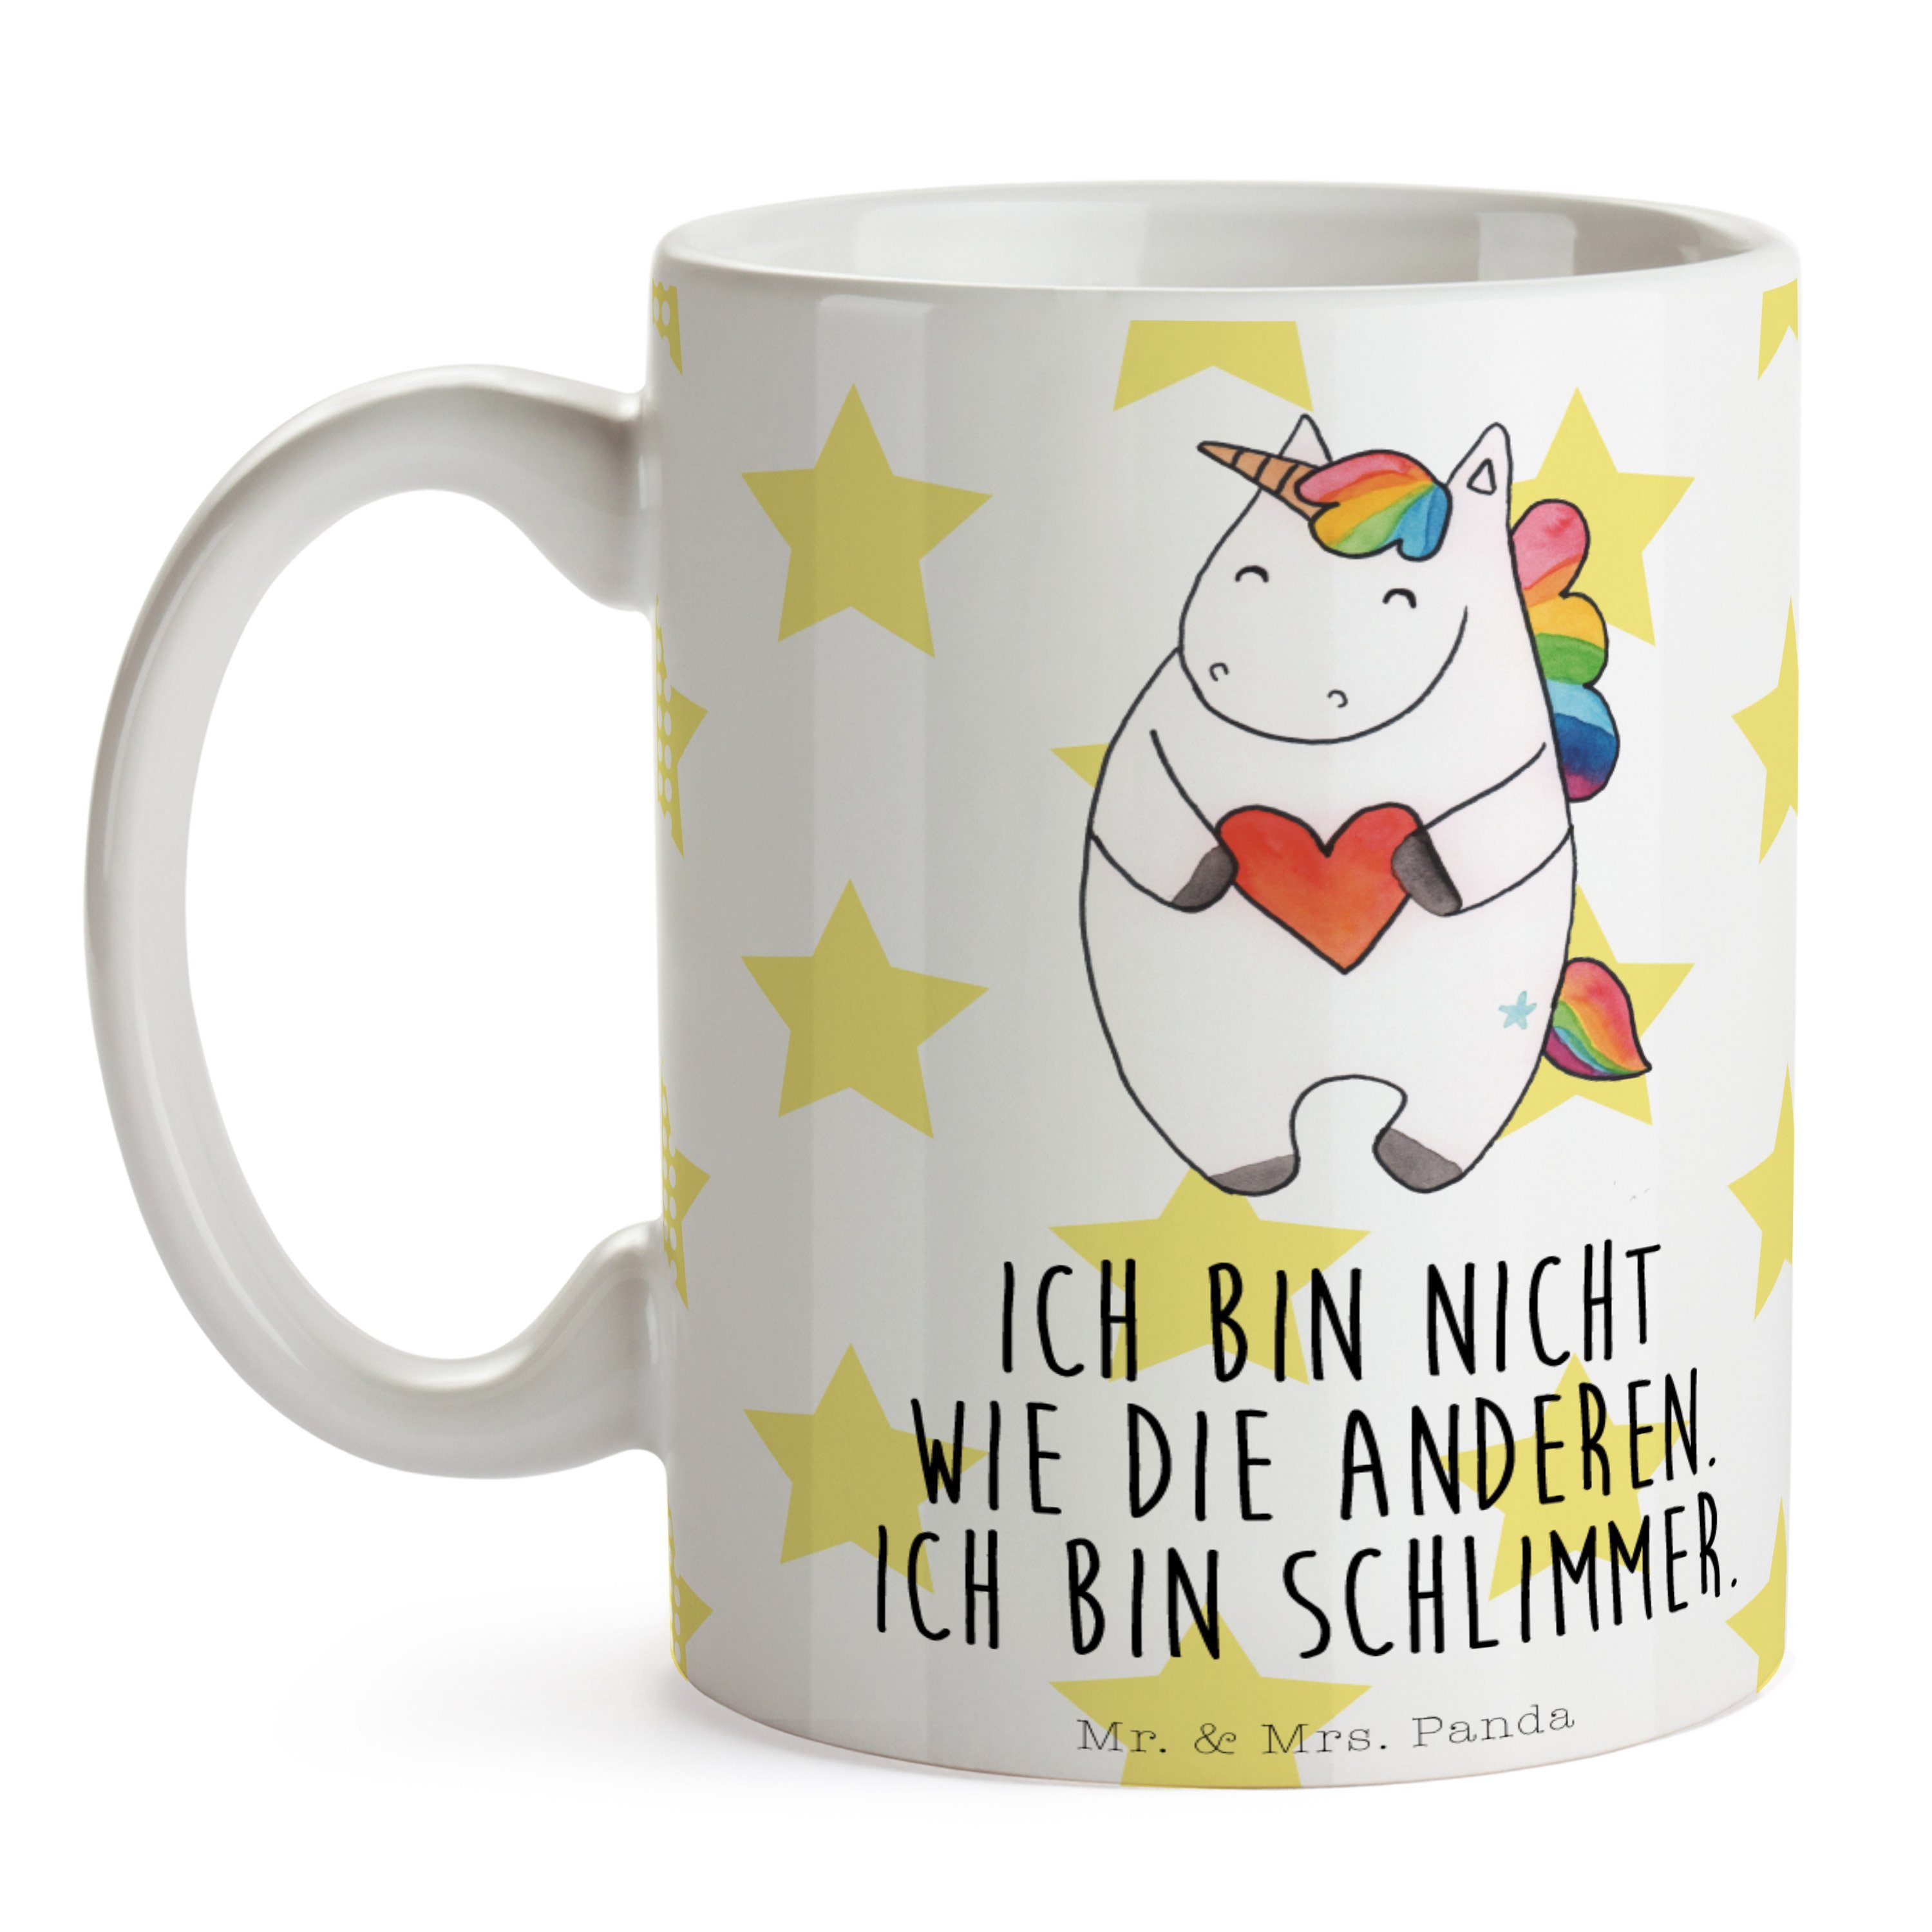 Mr. & Mrs. Gesche, - Einhörner, Tasse Keramik - Panda Weiß Herz bunt, Geschenk, Kaffeebecher, Einhorn